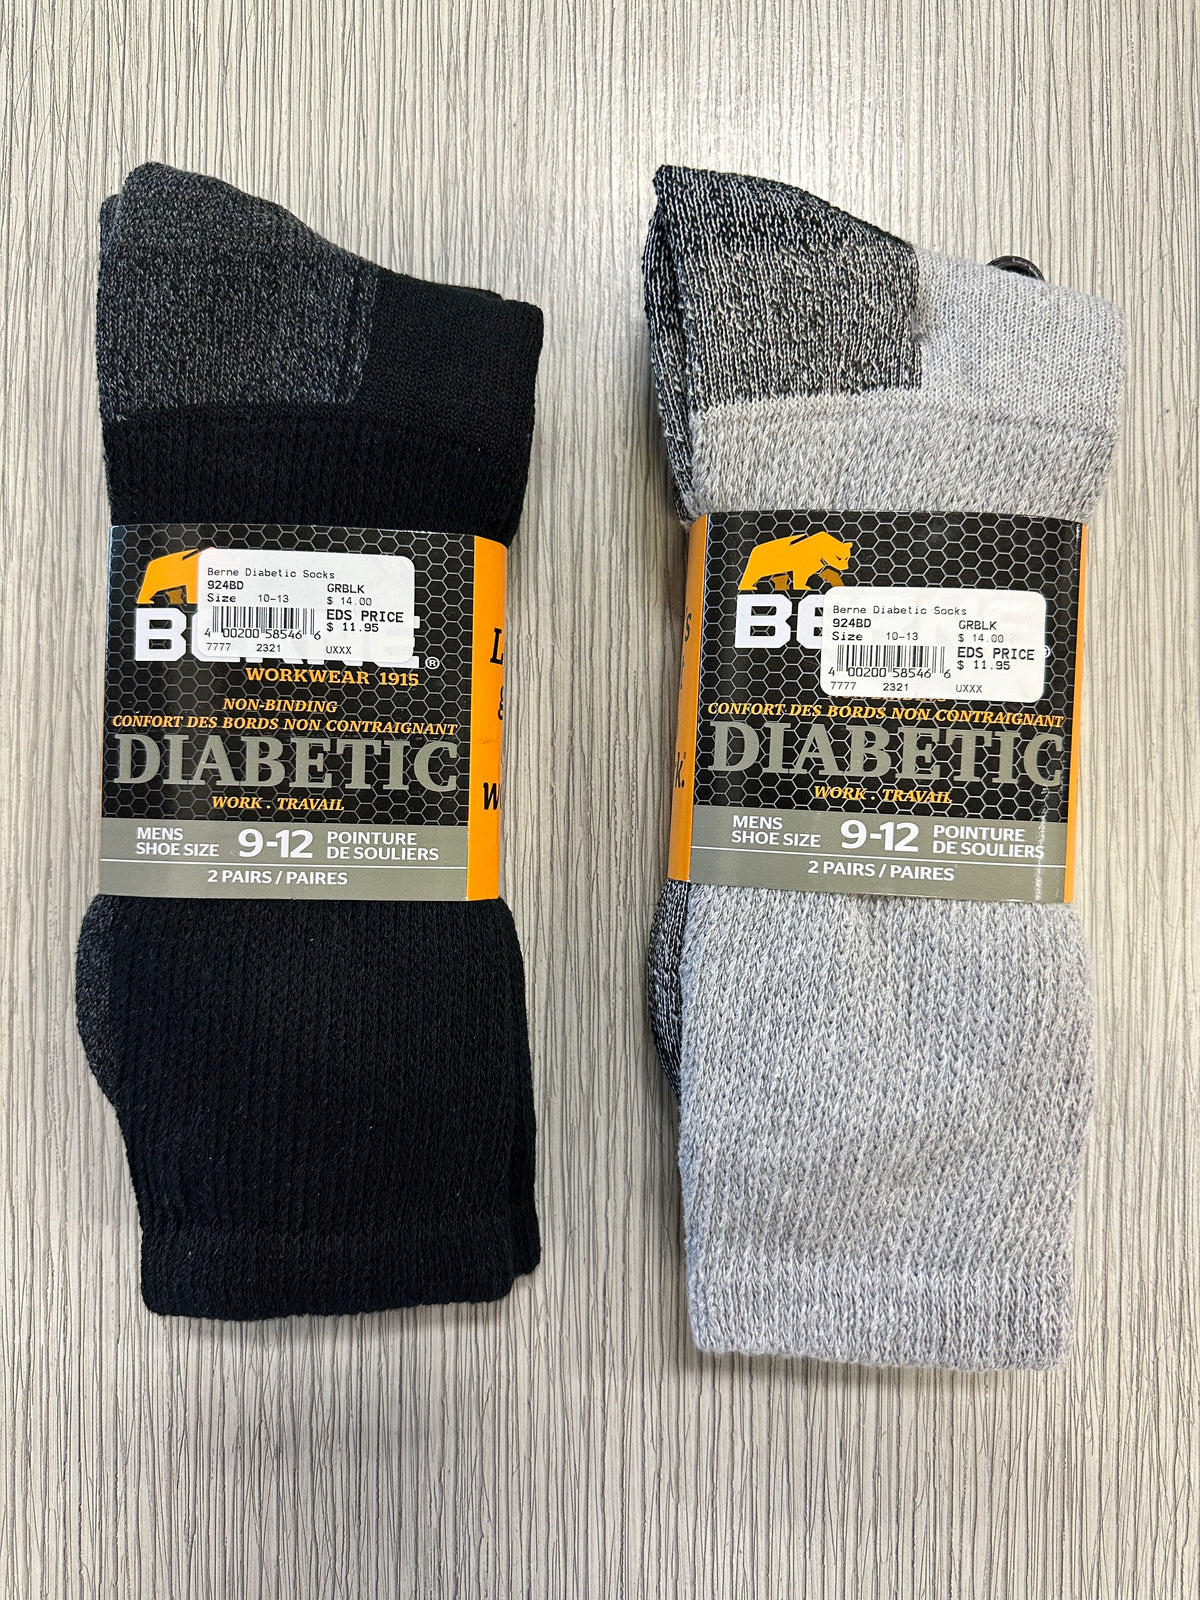 Berne Diabetic Socks